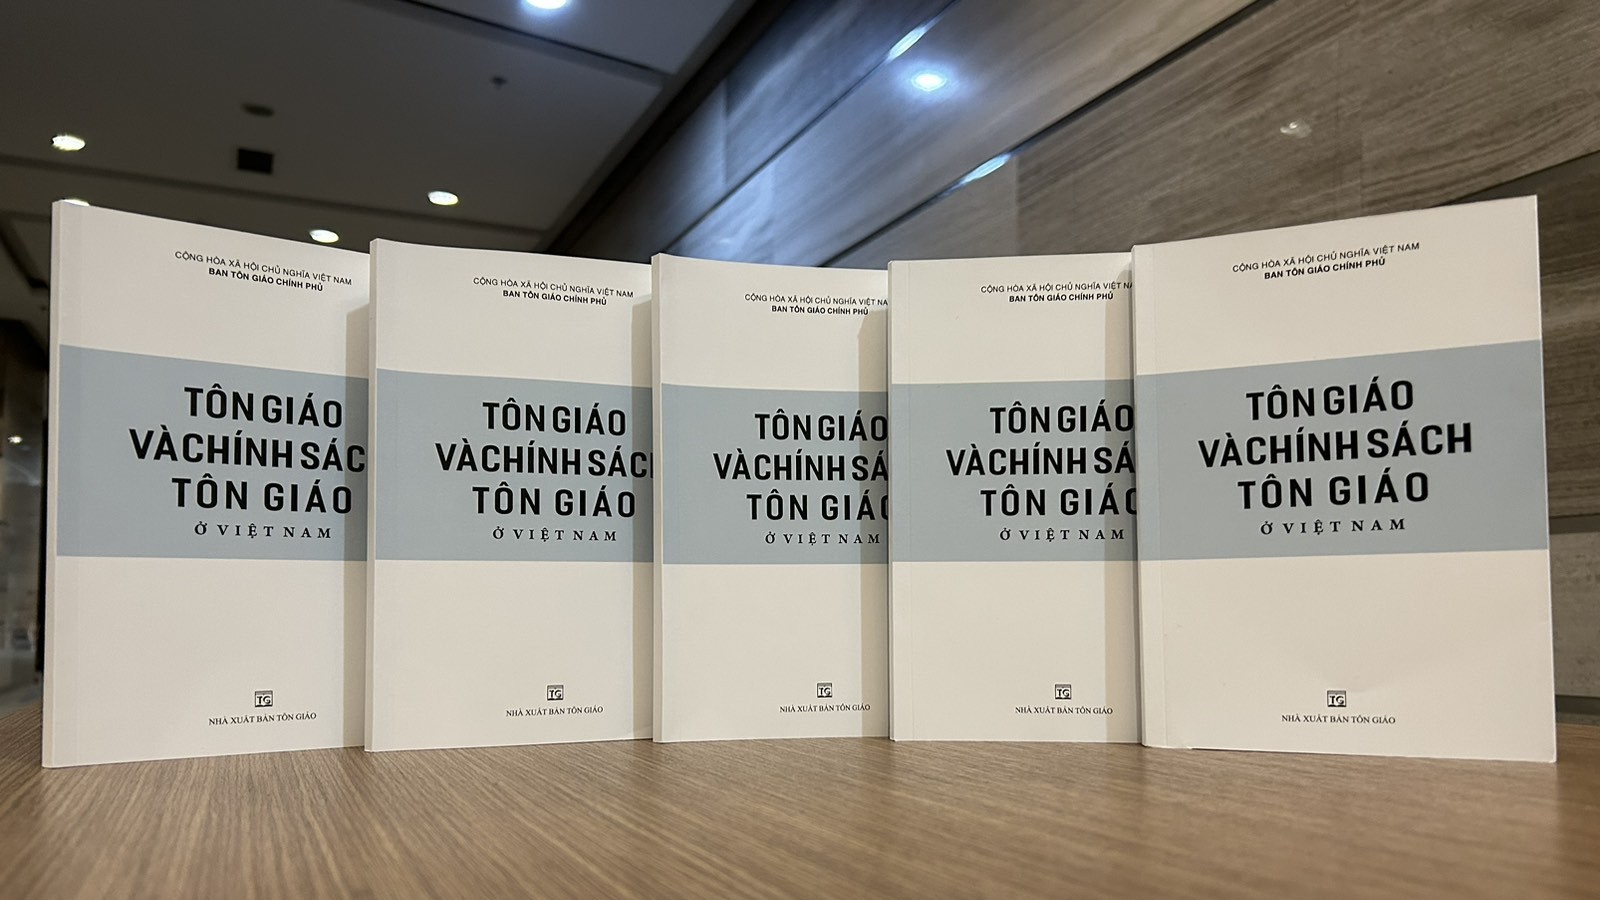 Ra mắt sách trắng 'Tôn giáo và chính sách tôn giáo ở Việt Nam'